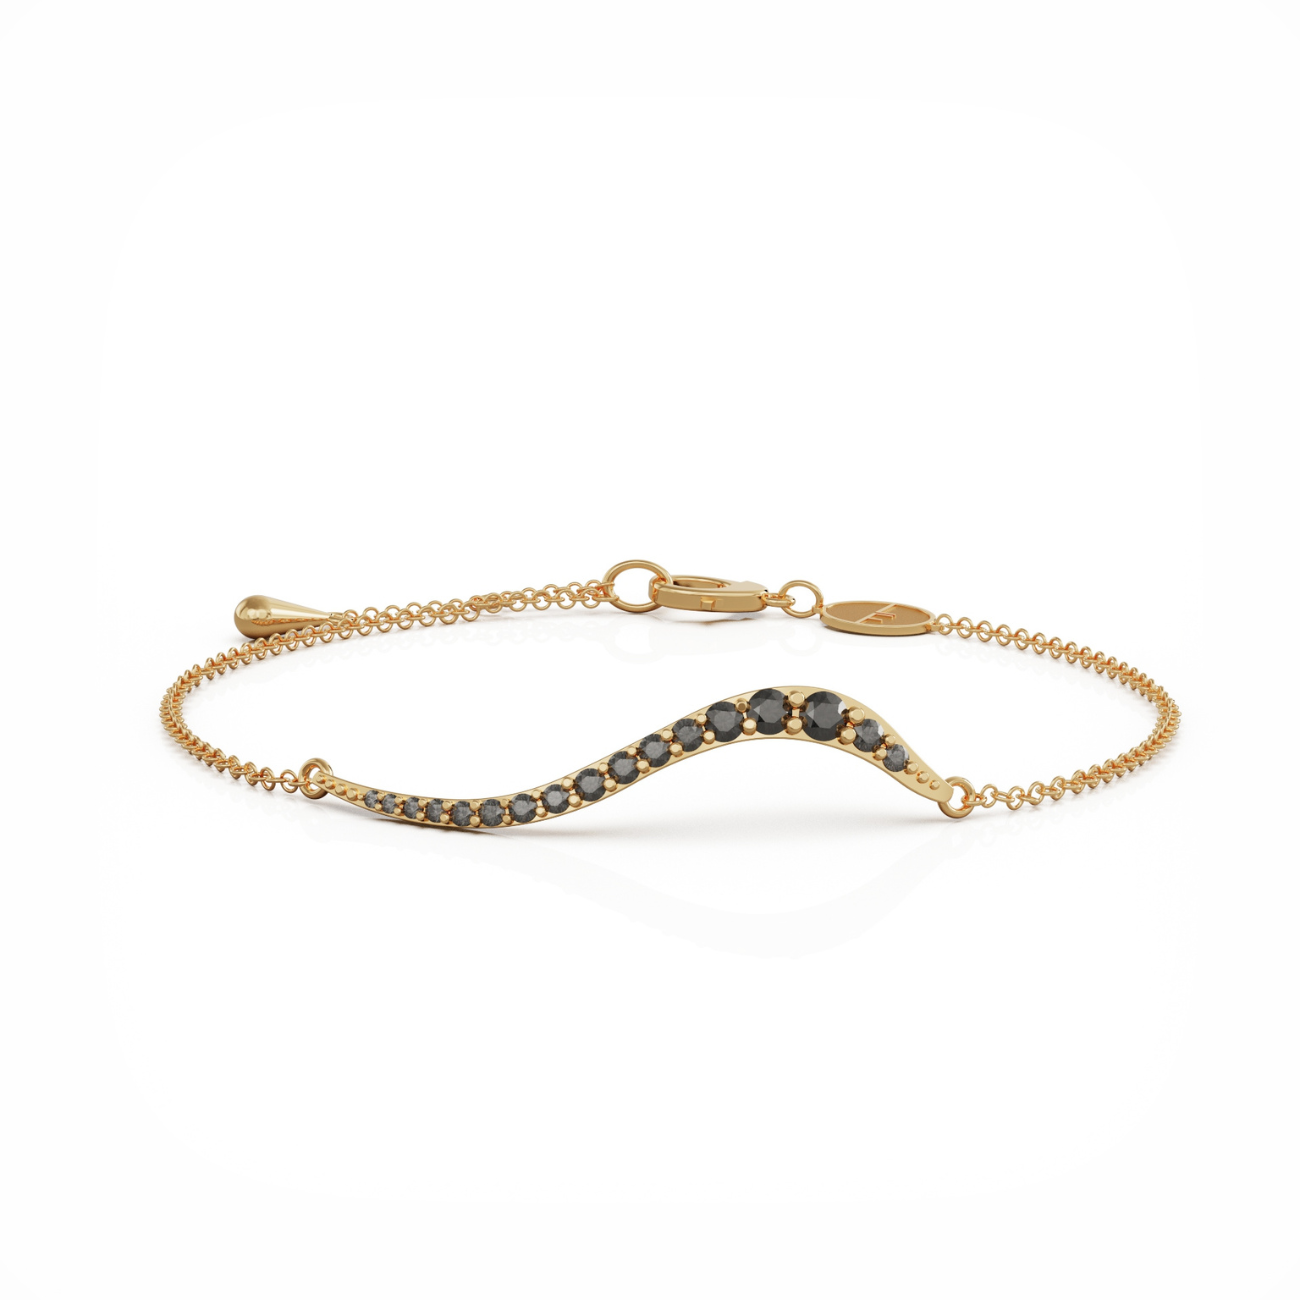 Swirl bracelet 18k gold with onyx cz